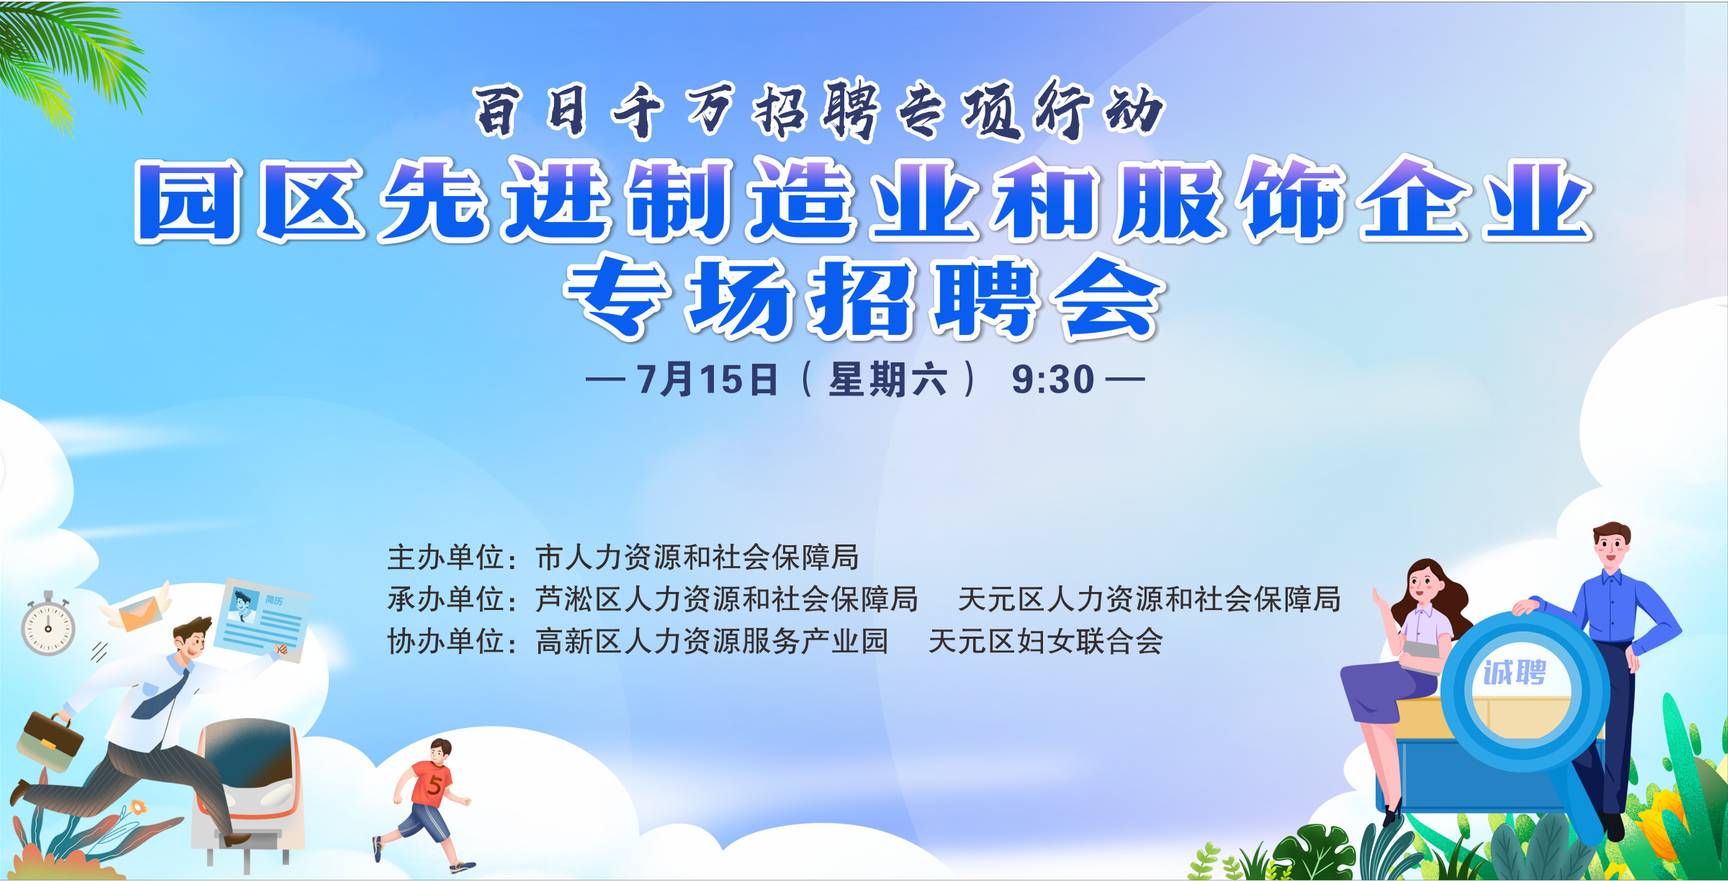 7月15日上午9:30百家企业齐聚「大汉·悦中心」2200+